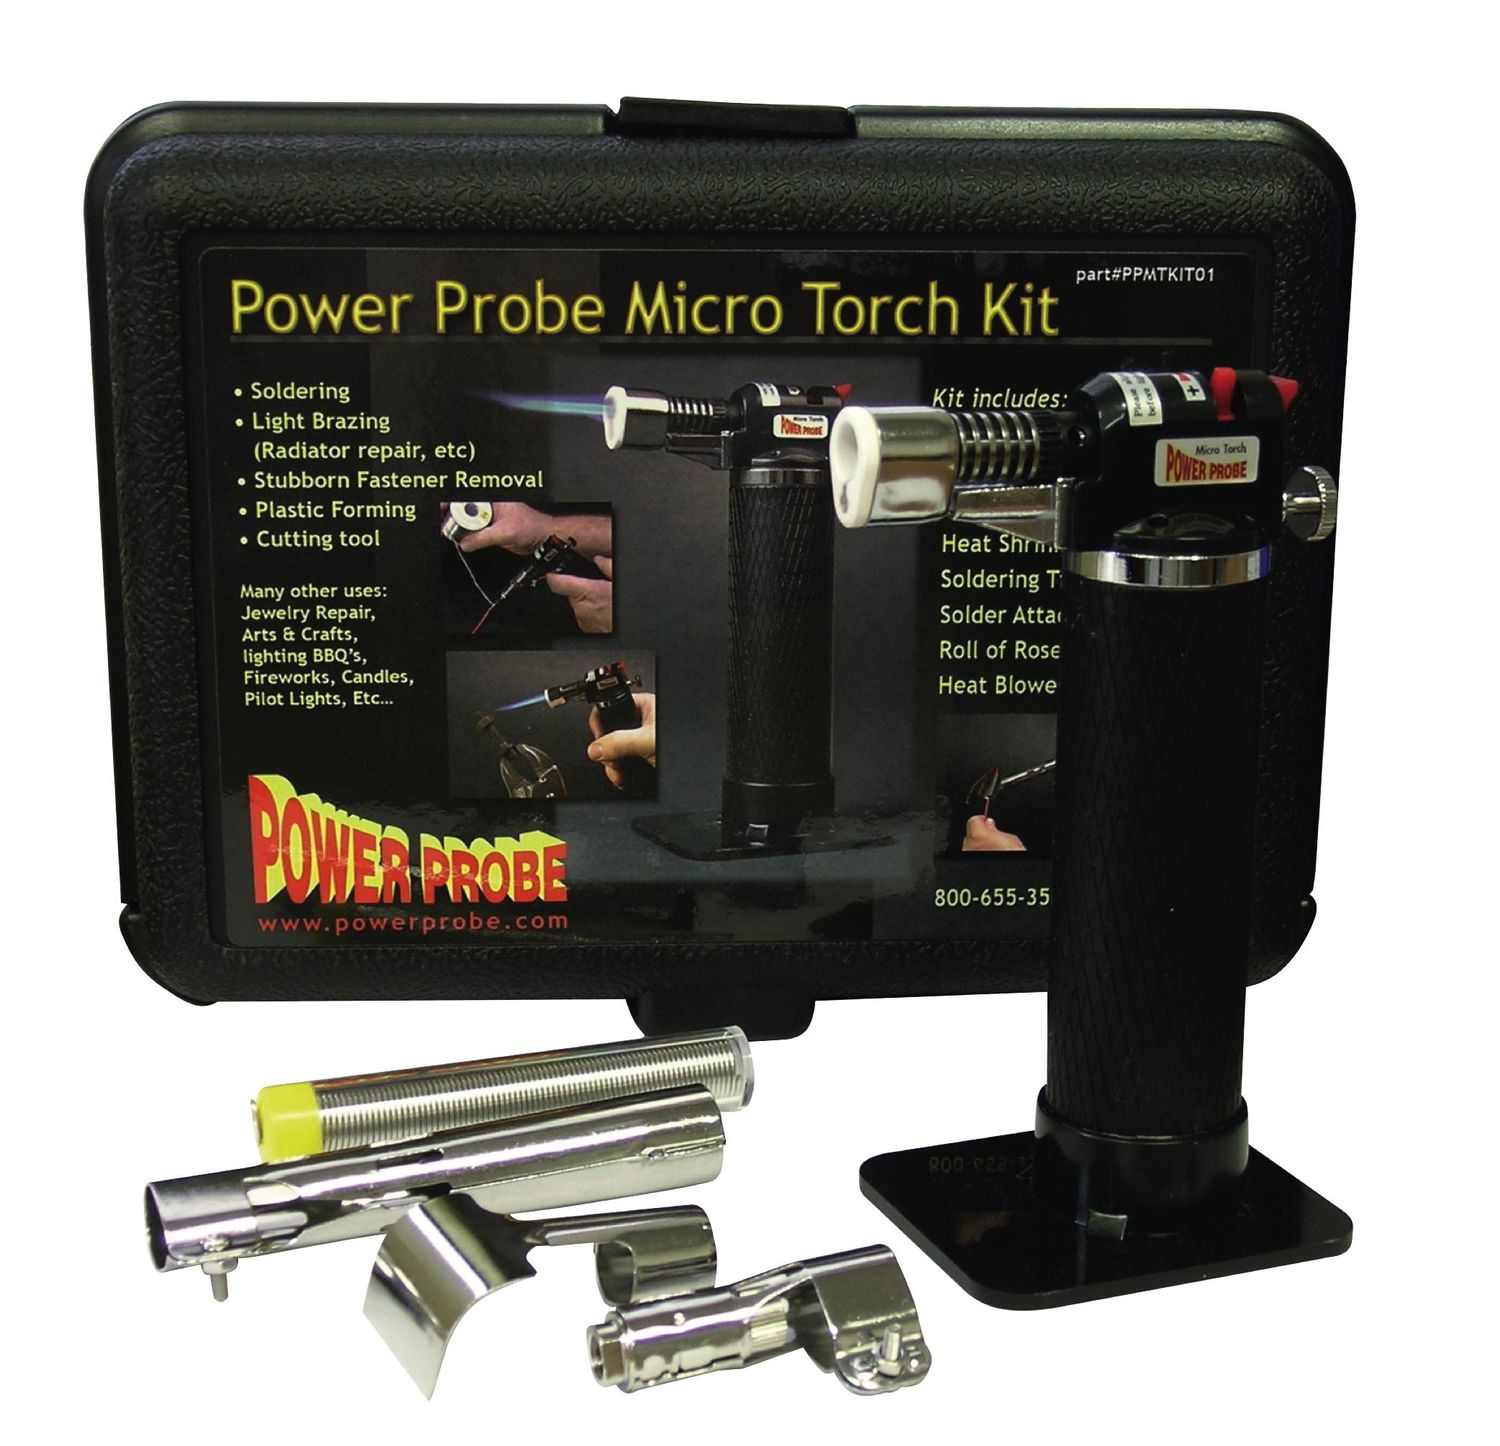 PWPPMTKIT01 - Micro Torch Kit